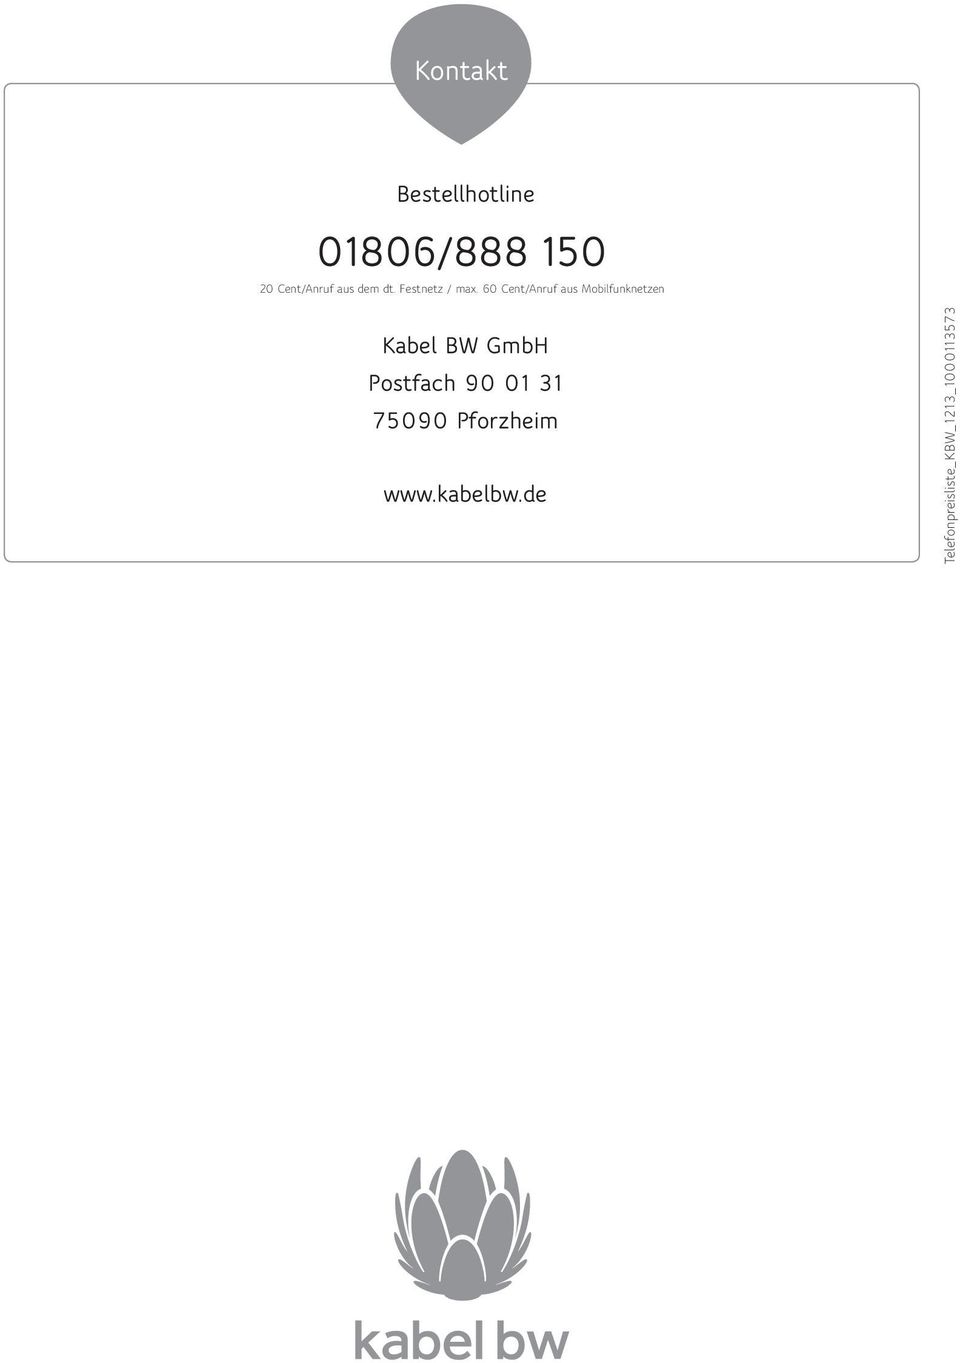 60 Cent/Anruf aus Mobilfunknetzen Kabel BW GmbH